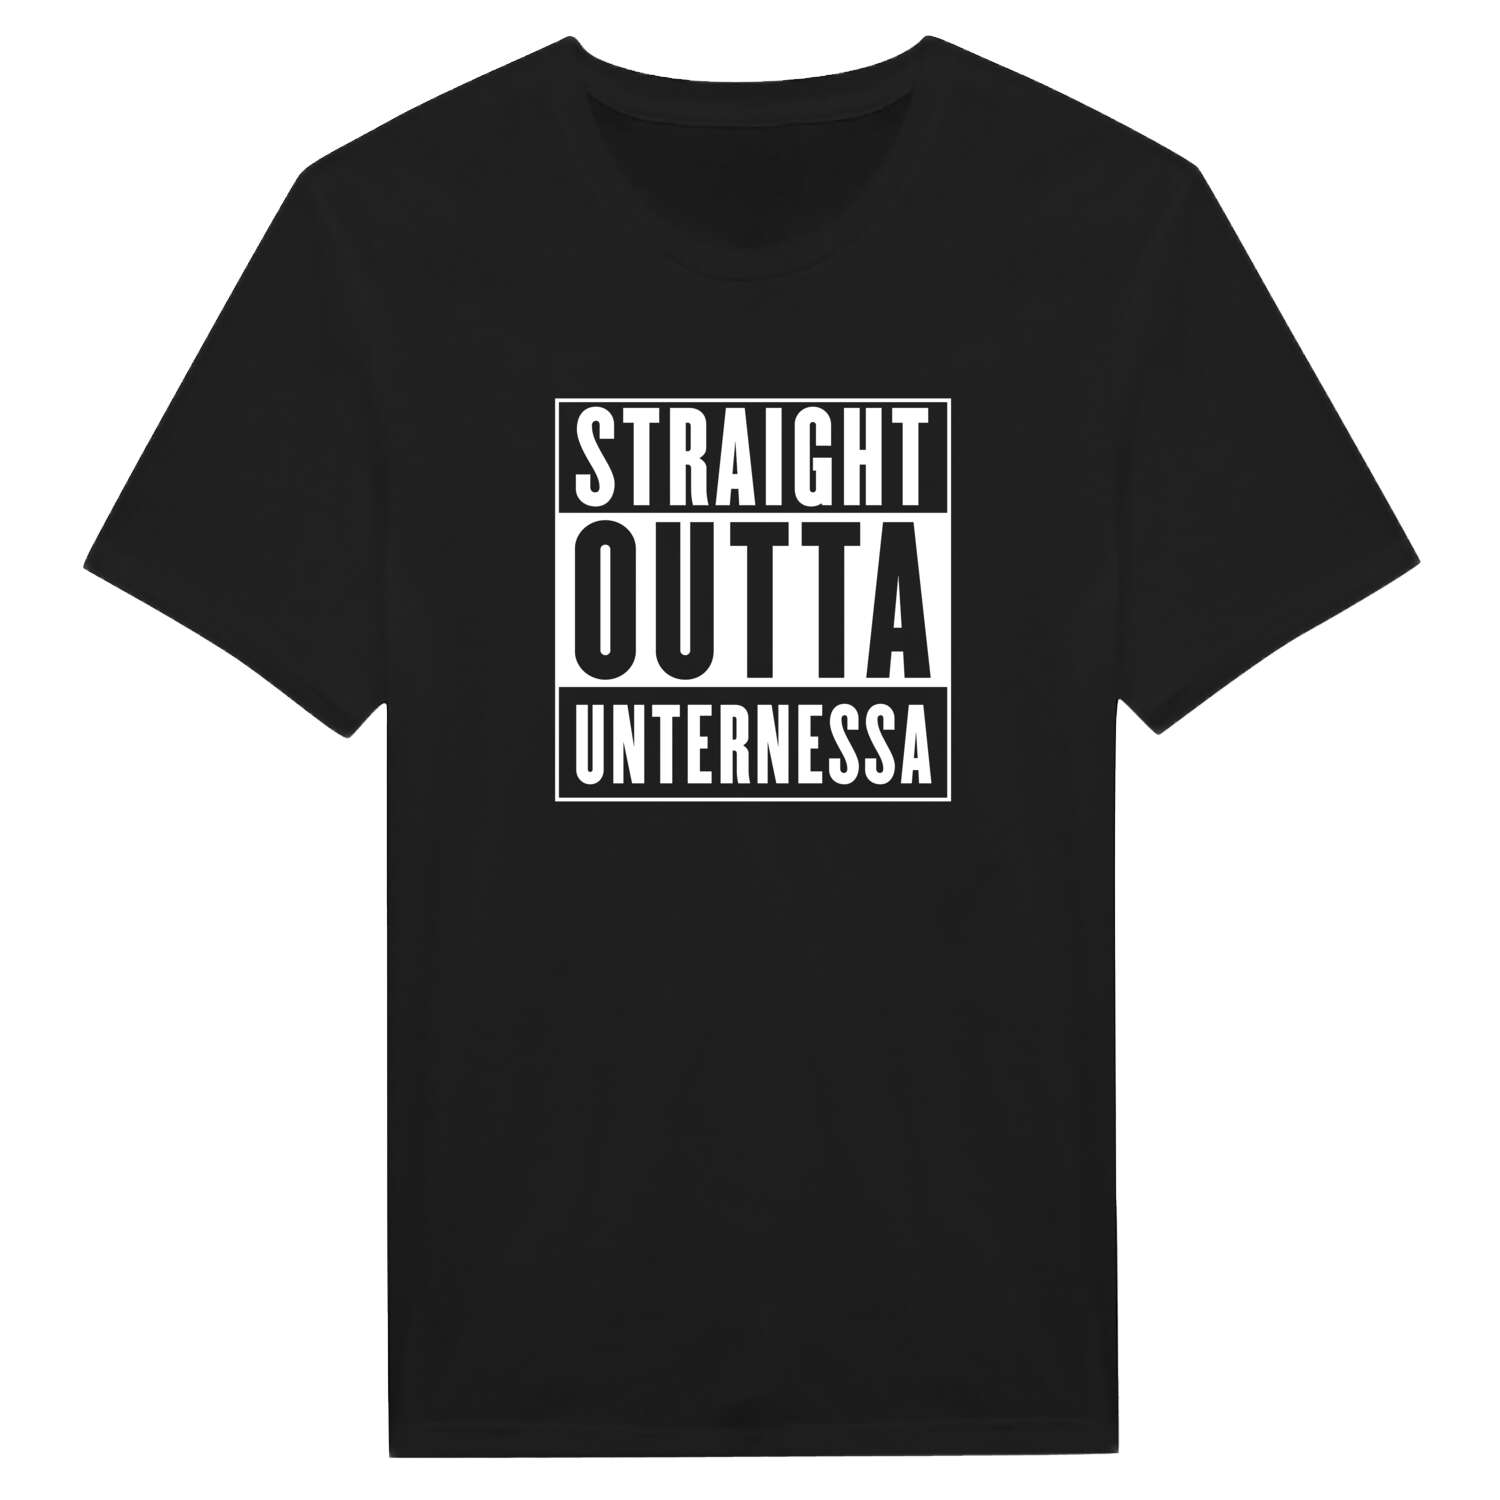 Unternessa T-Shirt »Straight Outta«